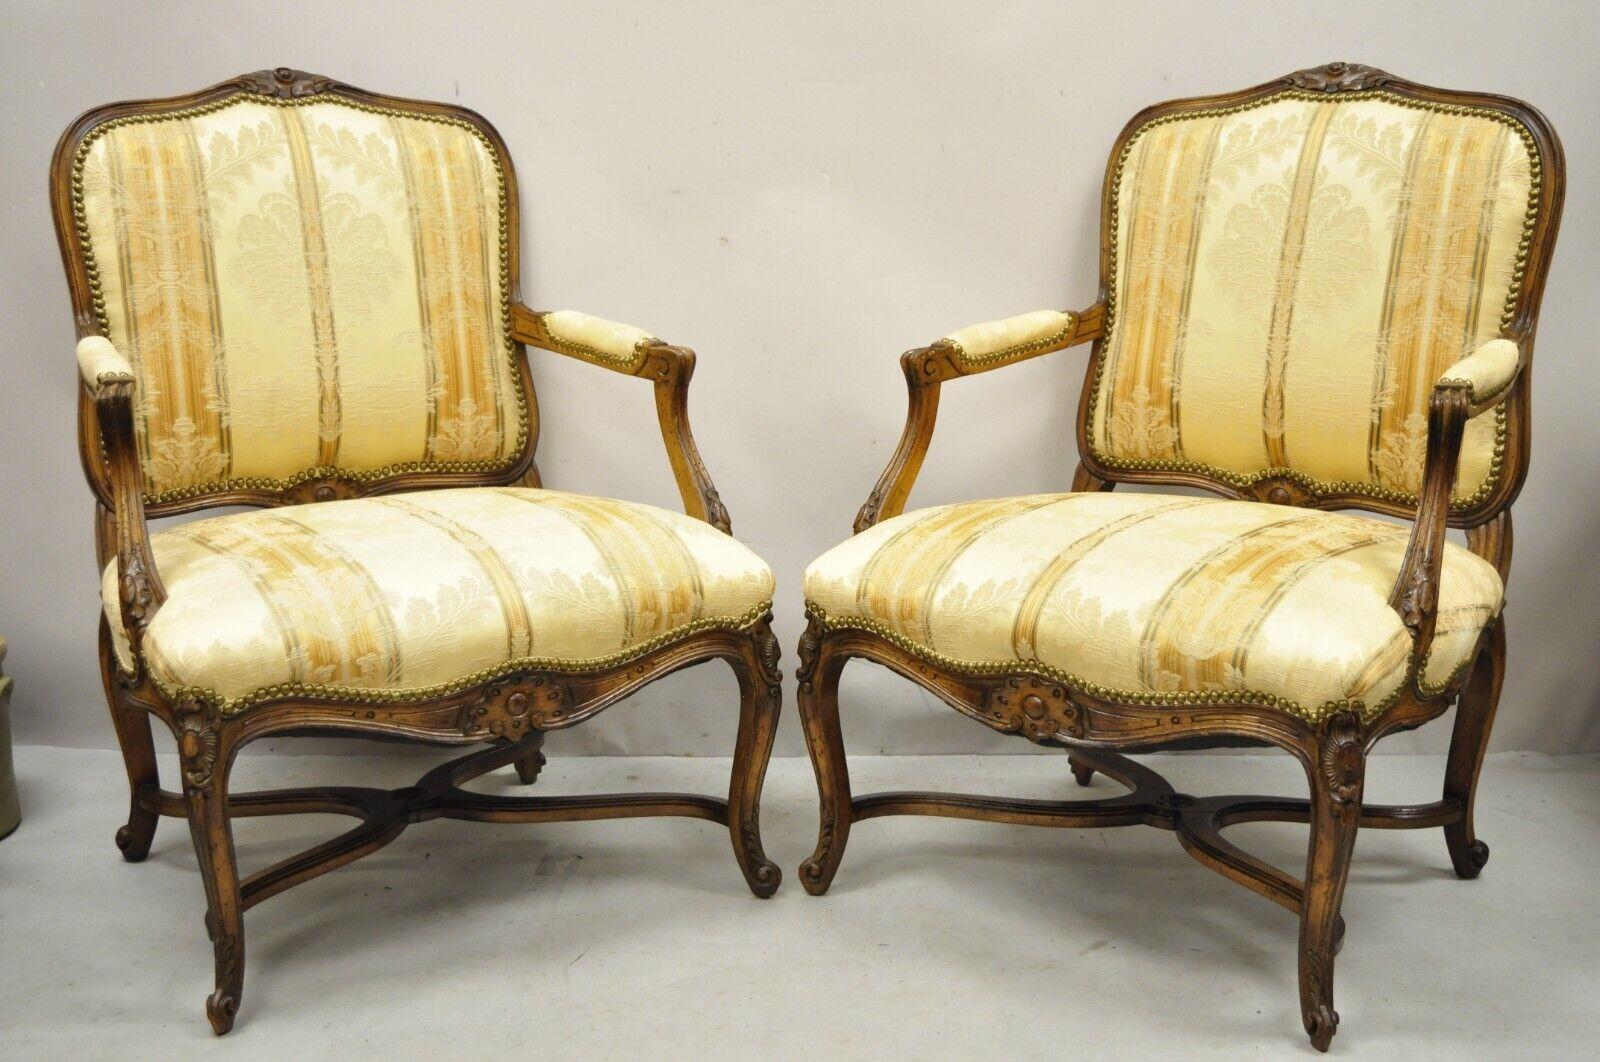 Vintage French Provincial Louis XV Country Style Lounge Chairs - a Pair. L'article est doté d'une base en croix, d'une tapisserie beige à motifs floraux, de cadres en bois massif, d'accoudoirs rembourrés, d'une finition vieillie, de pieds cabriole,